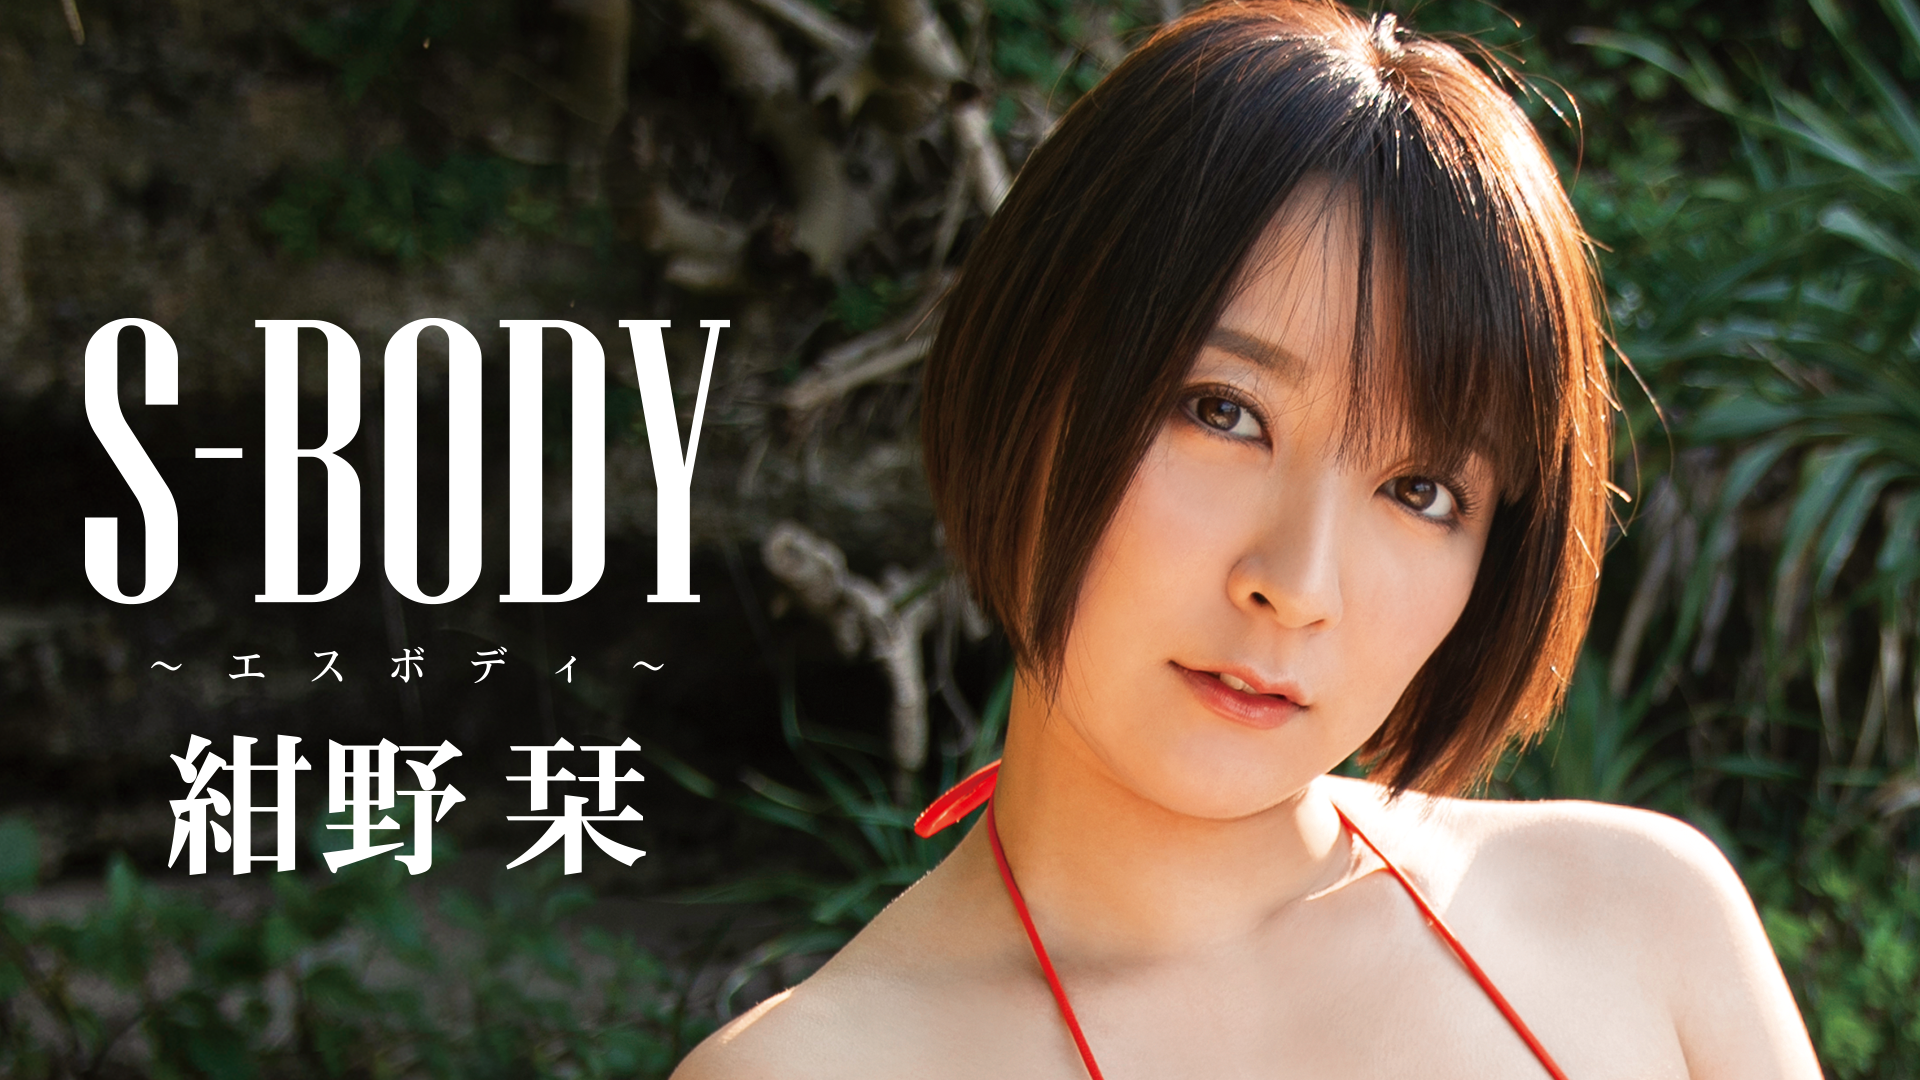 紺野栞『S-BODY』(その他♡ / 2020) - 動画配信 | U-NEXT 31日間無料トライアル